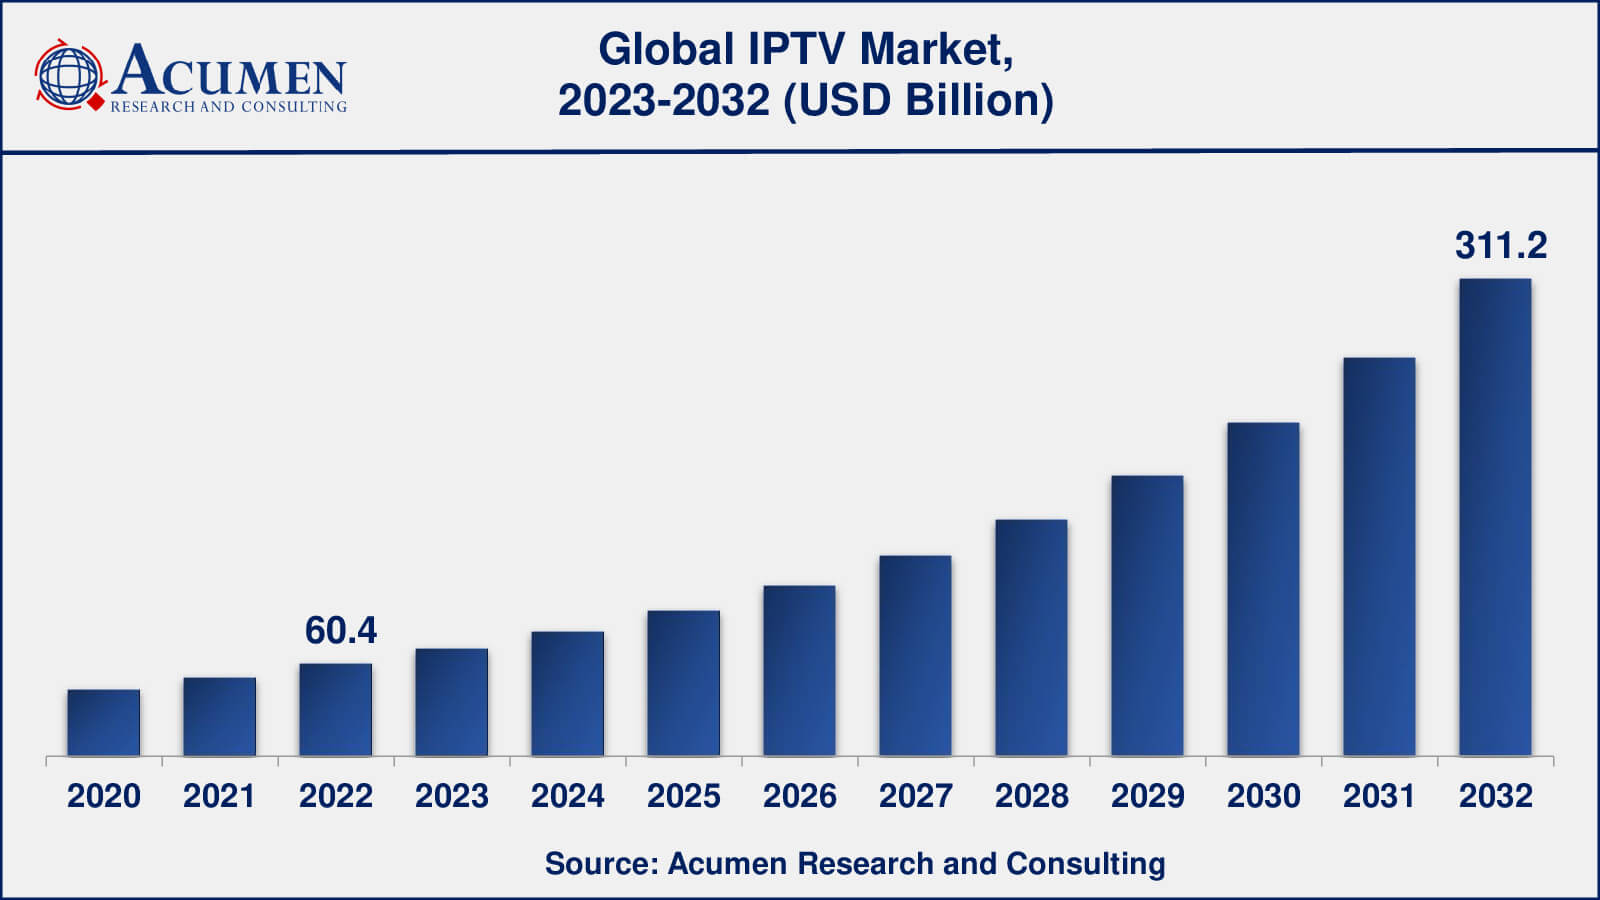 Global IPTV Market Dynamics